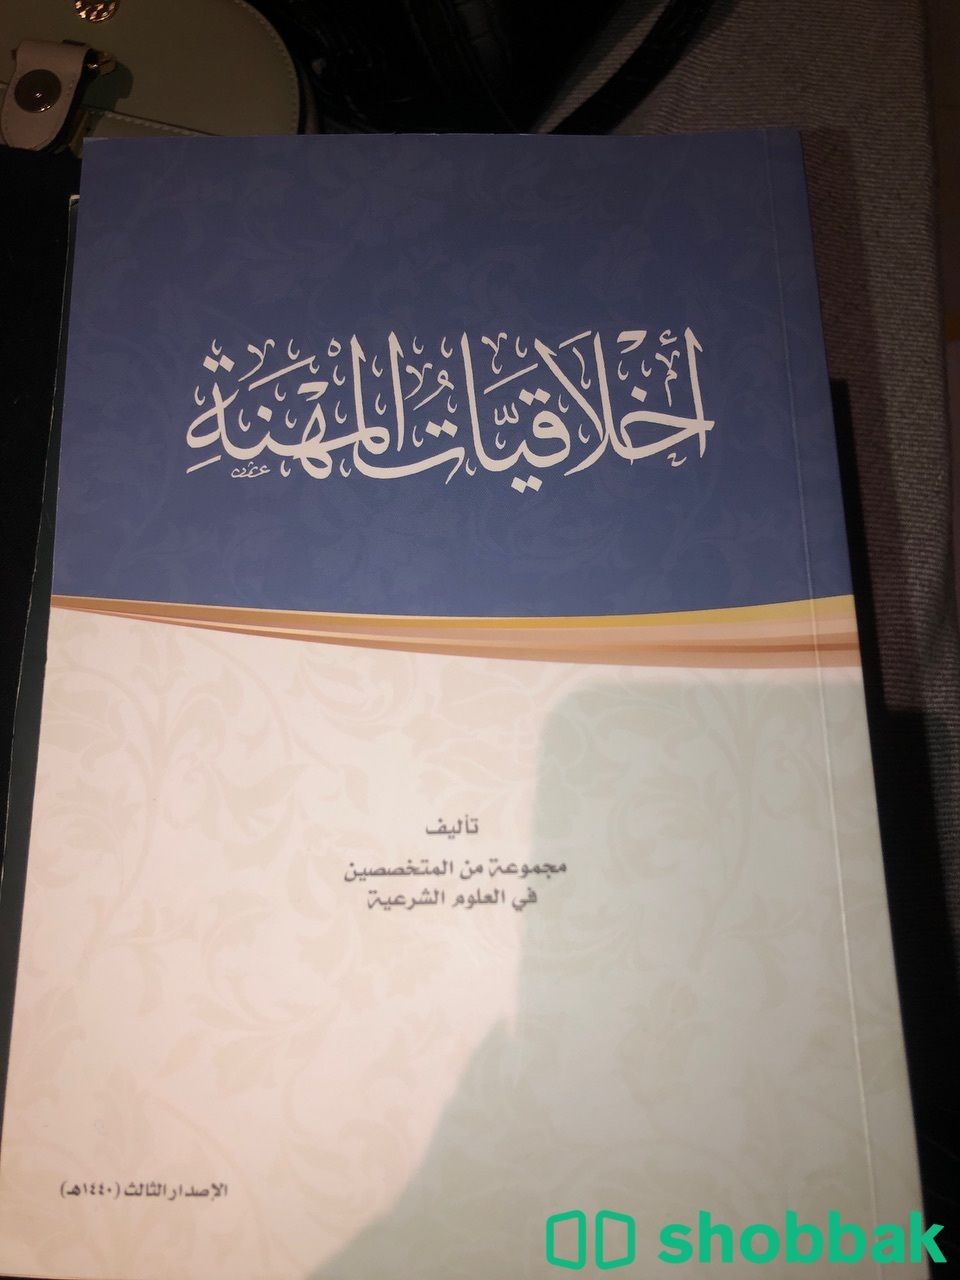 لدي كتب جامعه لتخصص اداره الاعمال قسم المحاسبه Shobbak Saudi Arabia